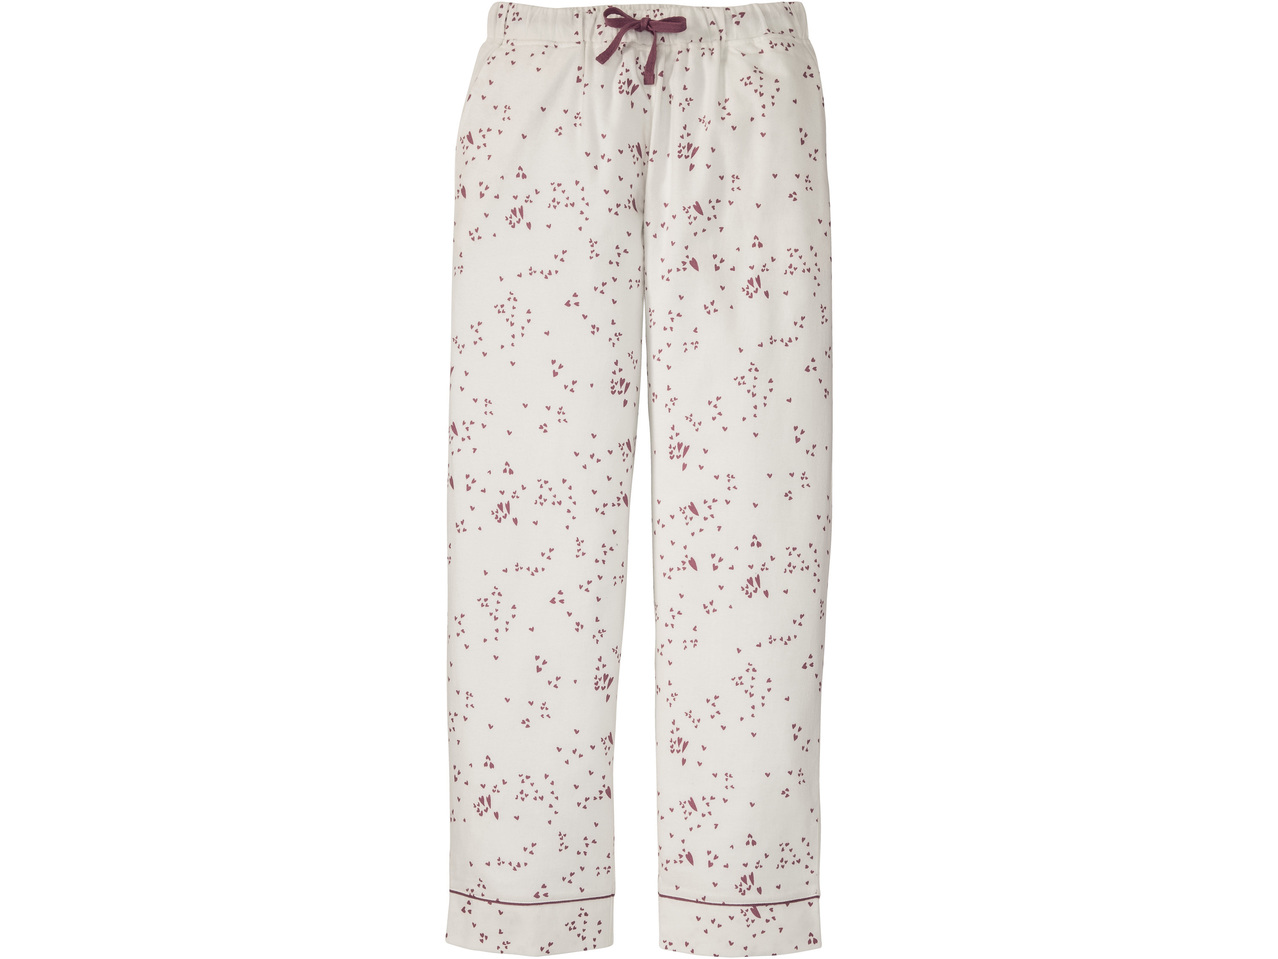 ESMARA LINGERIE Ladies' Flannel Pyjamas